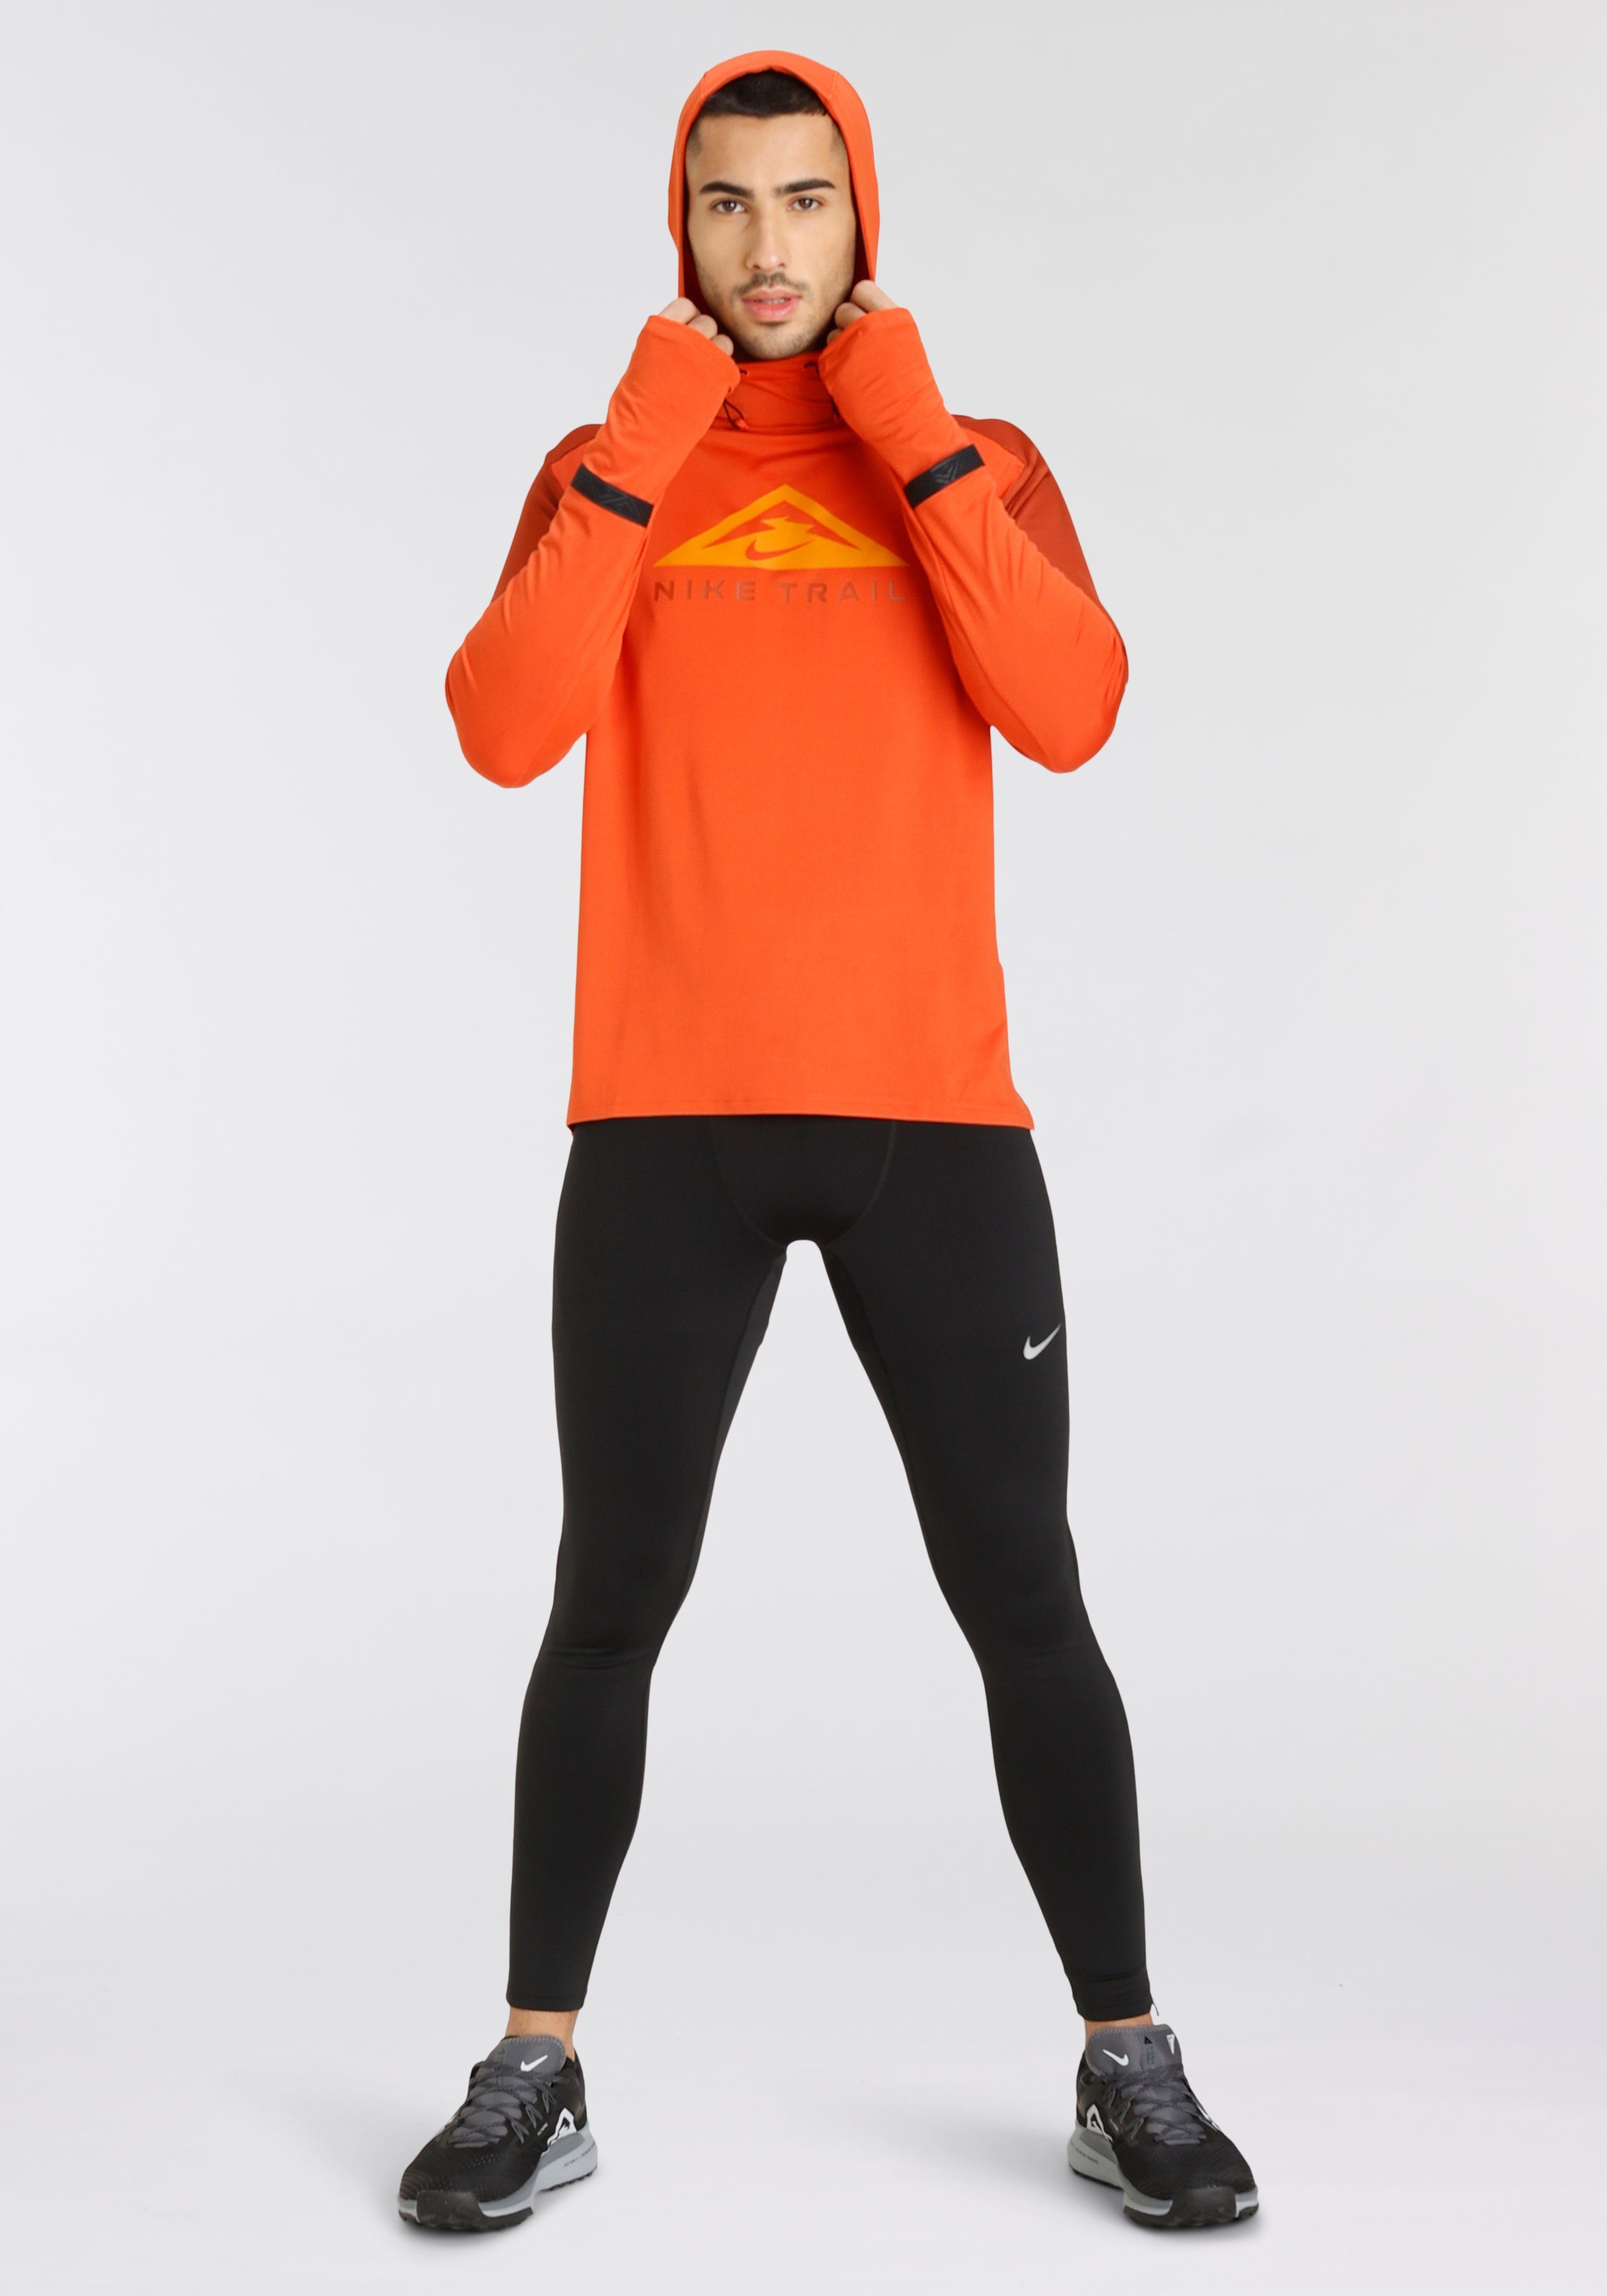 Men's schwarz Lauftights Challenger Tights Dri-FIT Nike Running